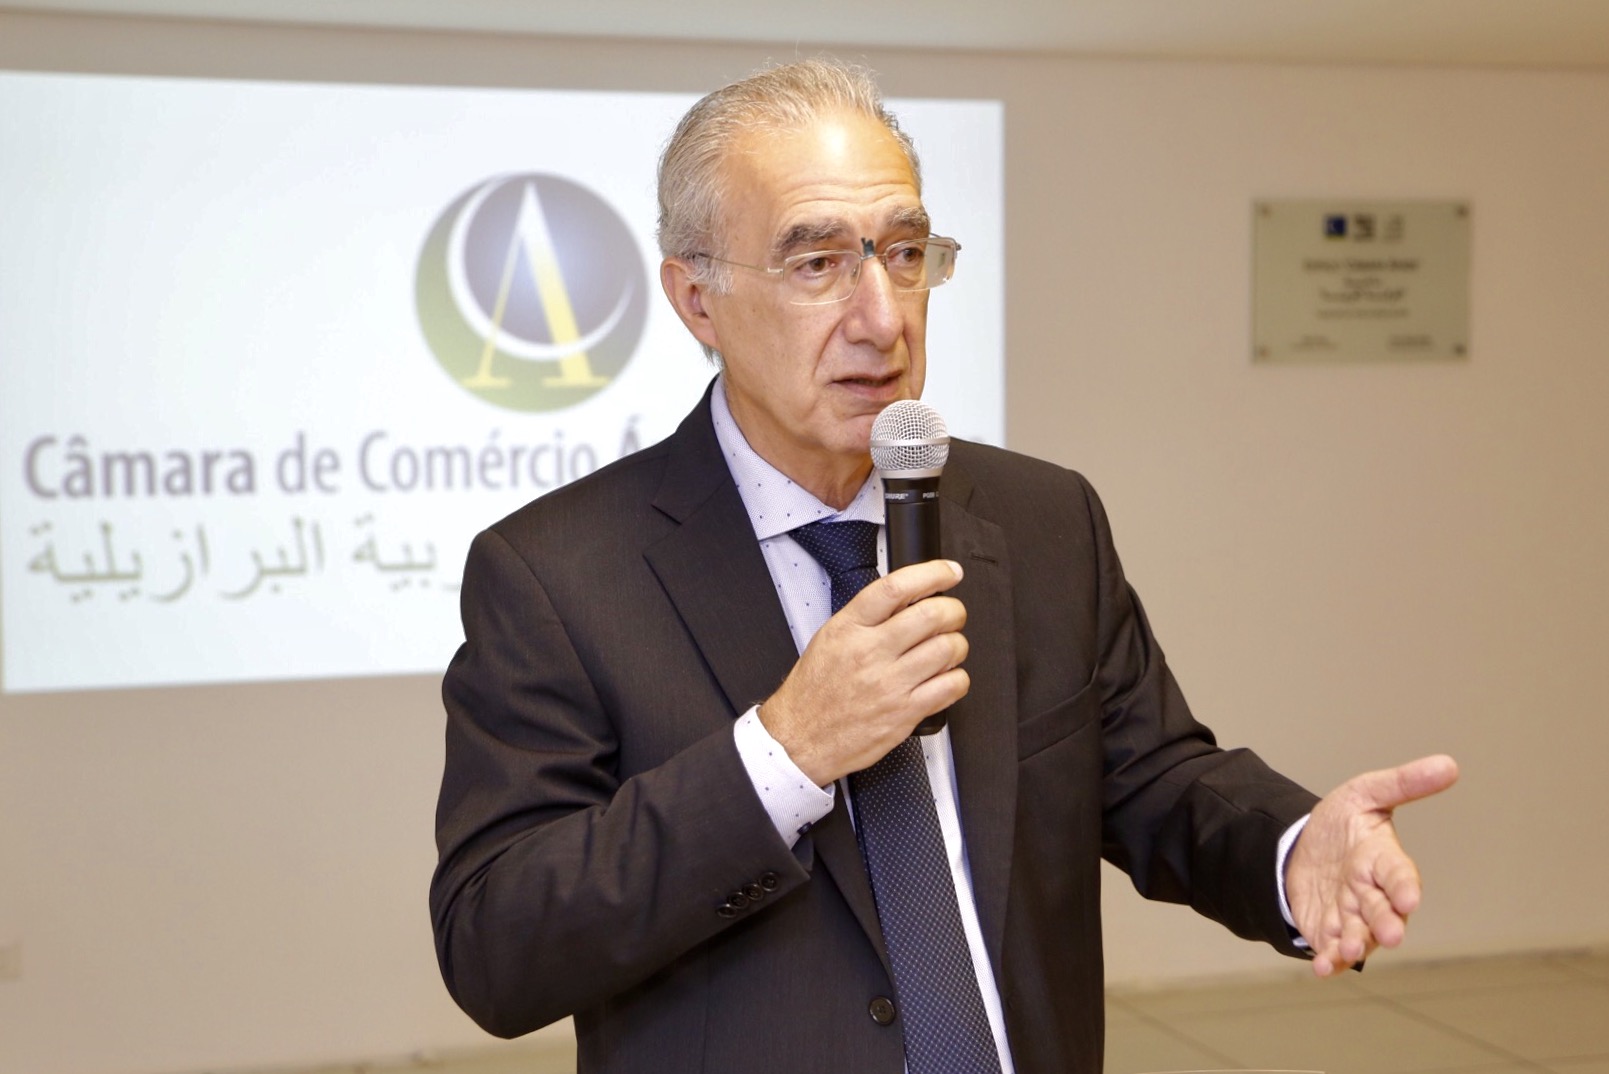 Câmara de Comércio Árabe Brasileira promove palestra sobre o Novo Certificado de Origem para o Egito